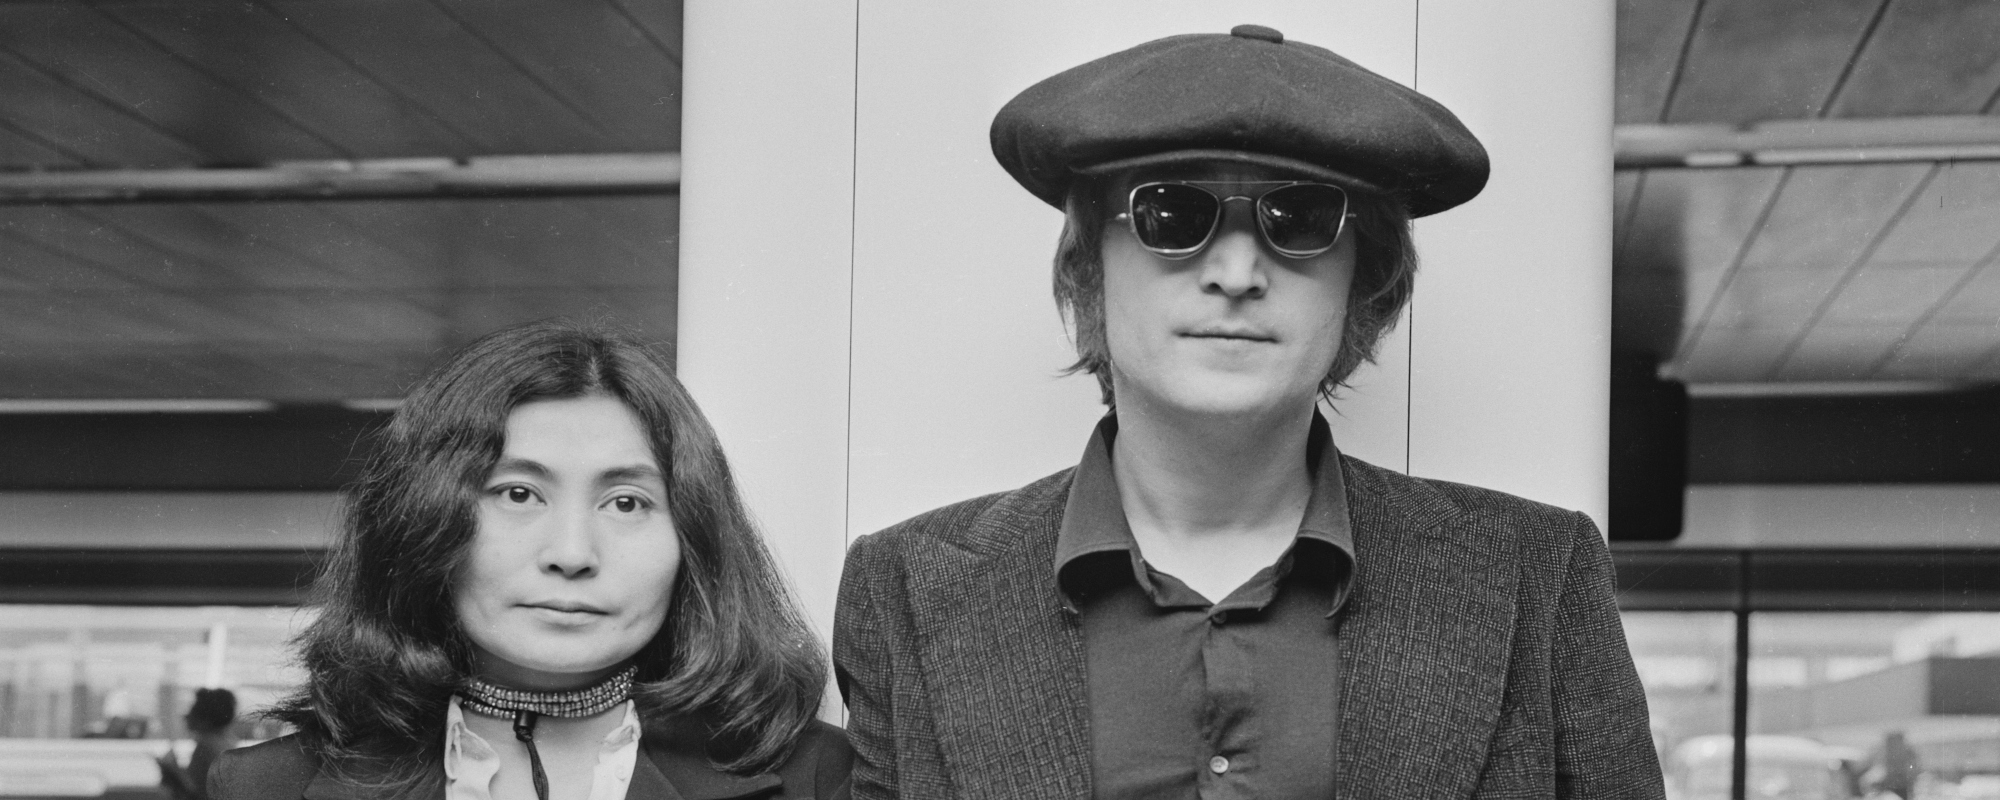 Comment devenir citoyen du pays conceptuel de John Lennon et Yoko Ono, Nutopia